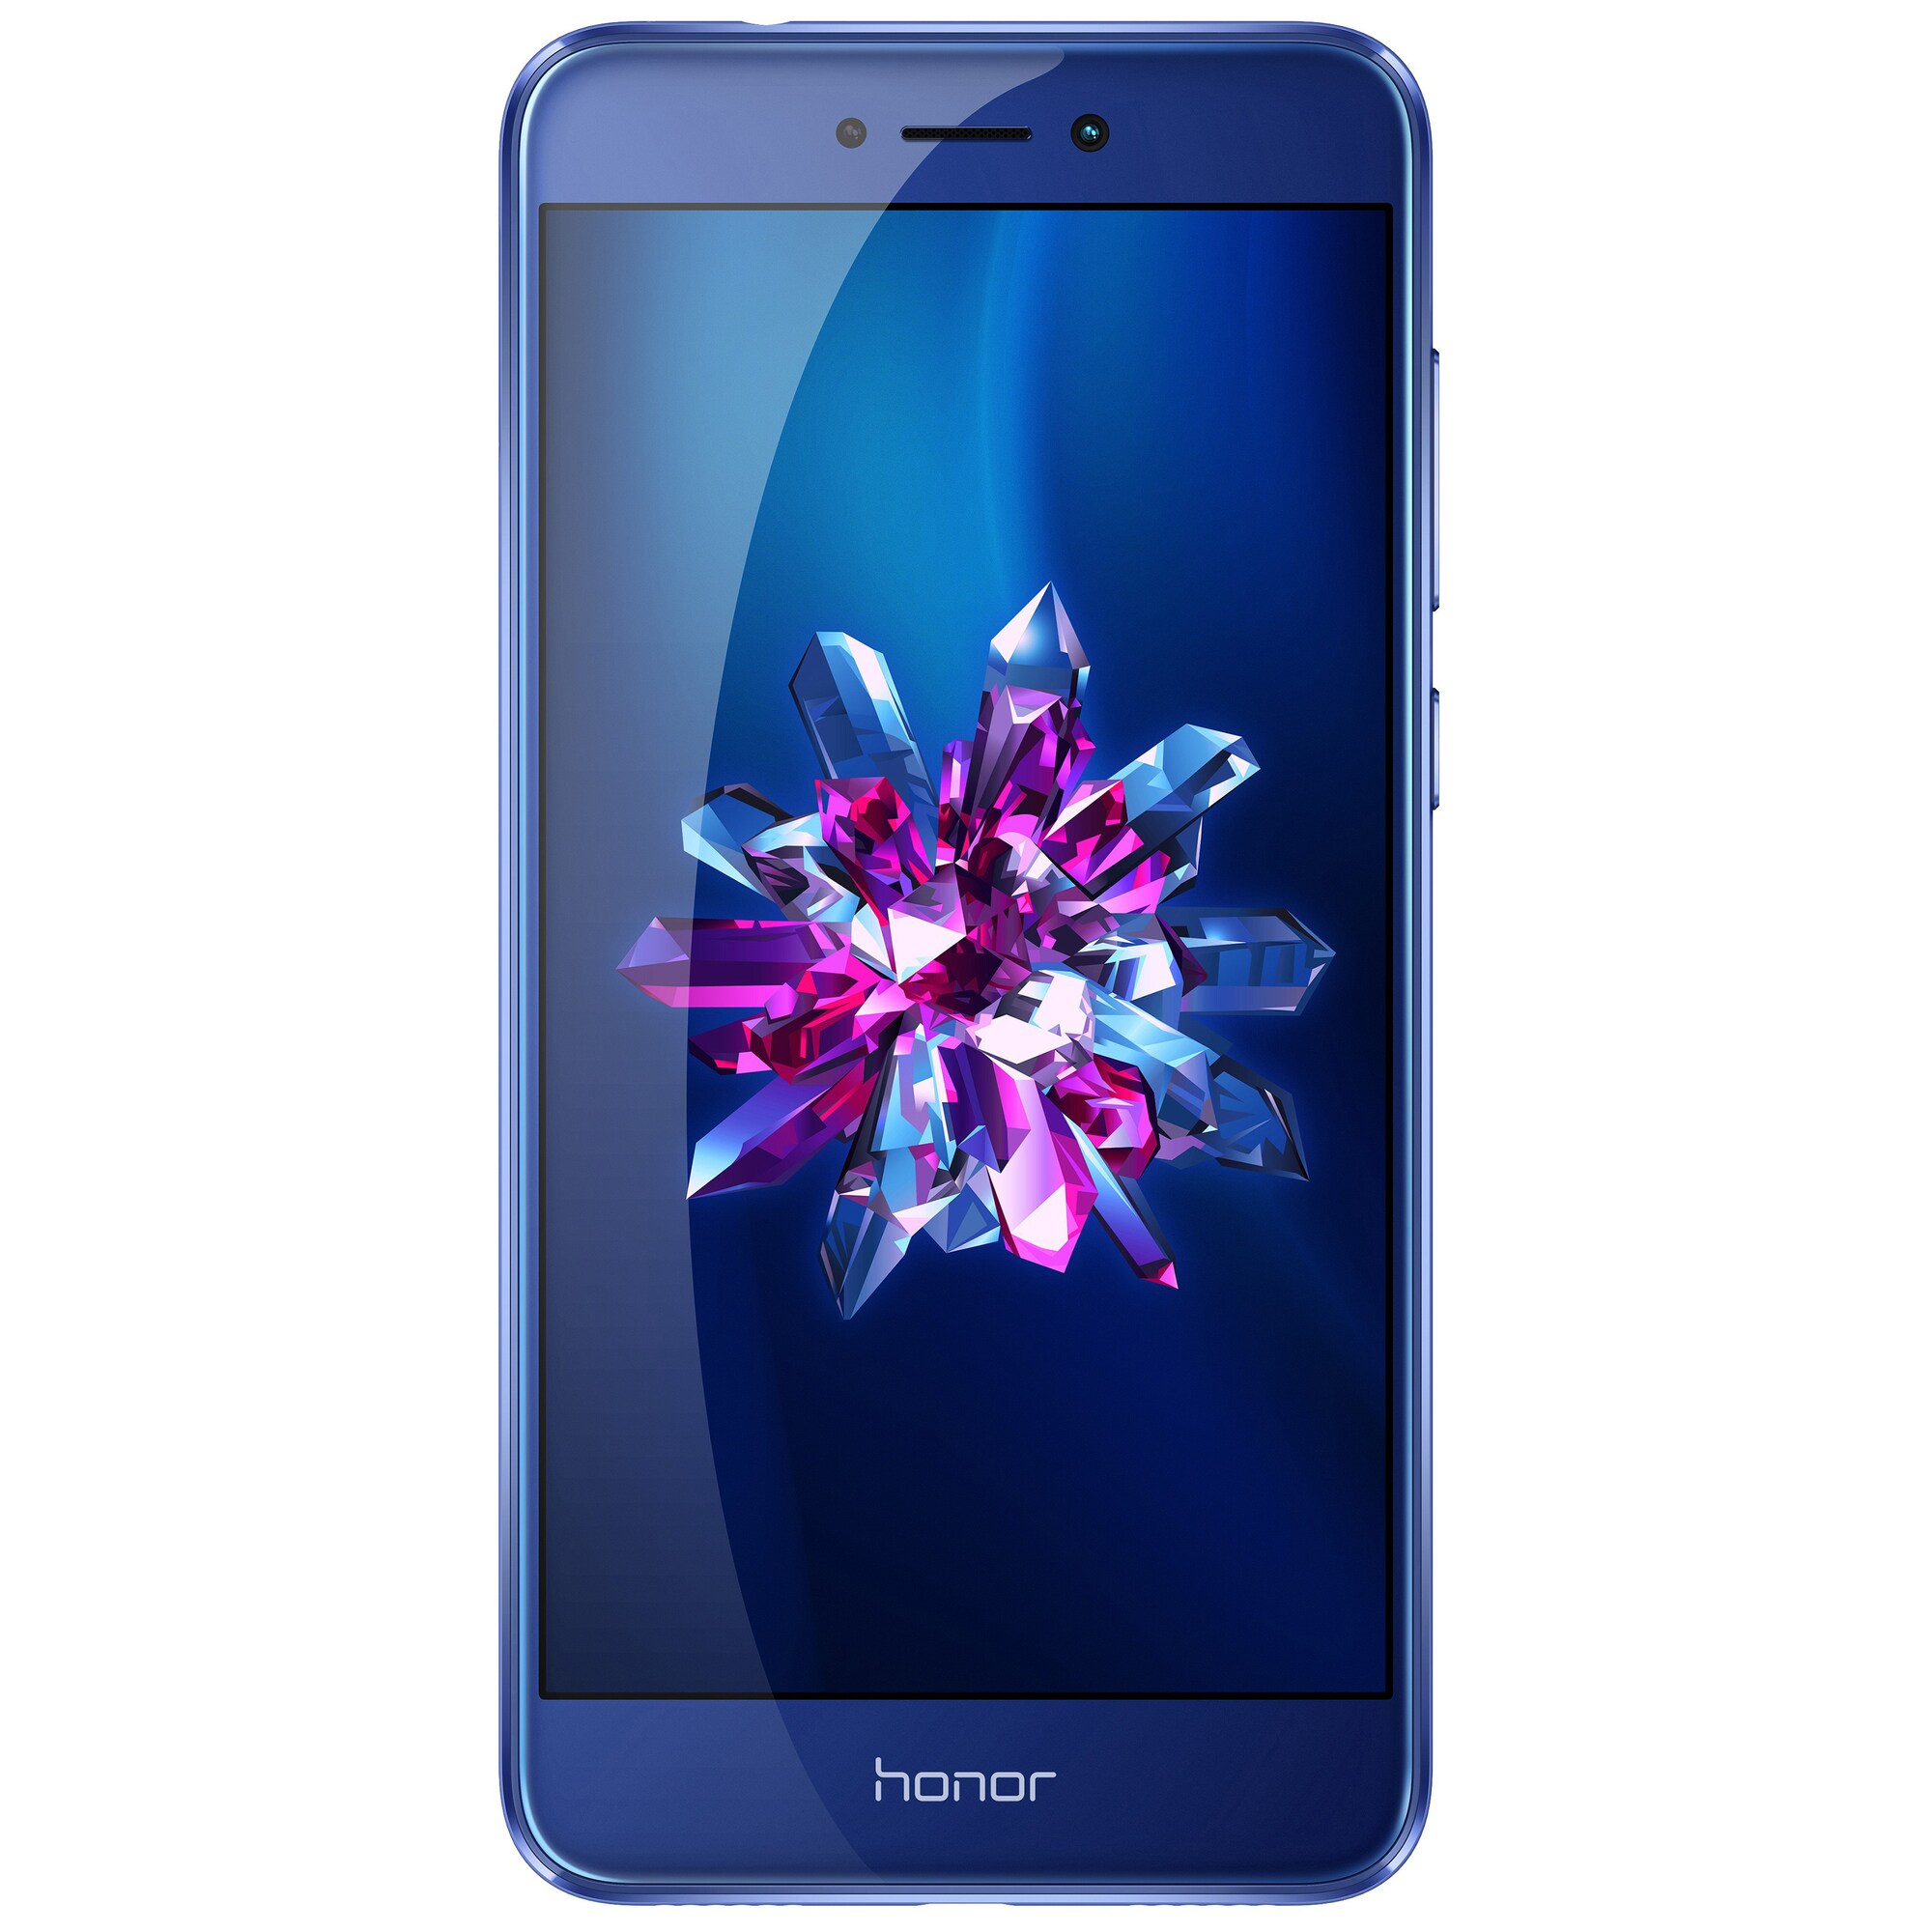 Huawei Honor 8 Lite smarttelefon (blå) - Elkjøp